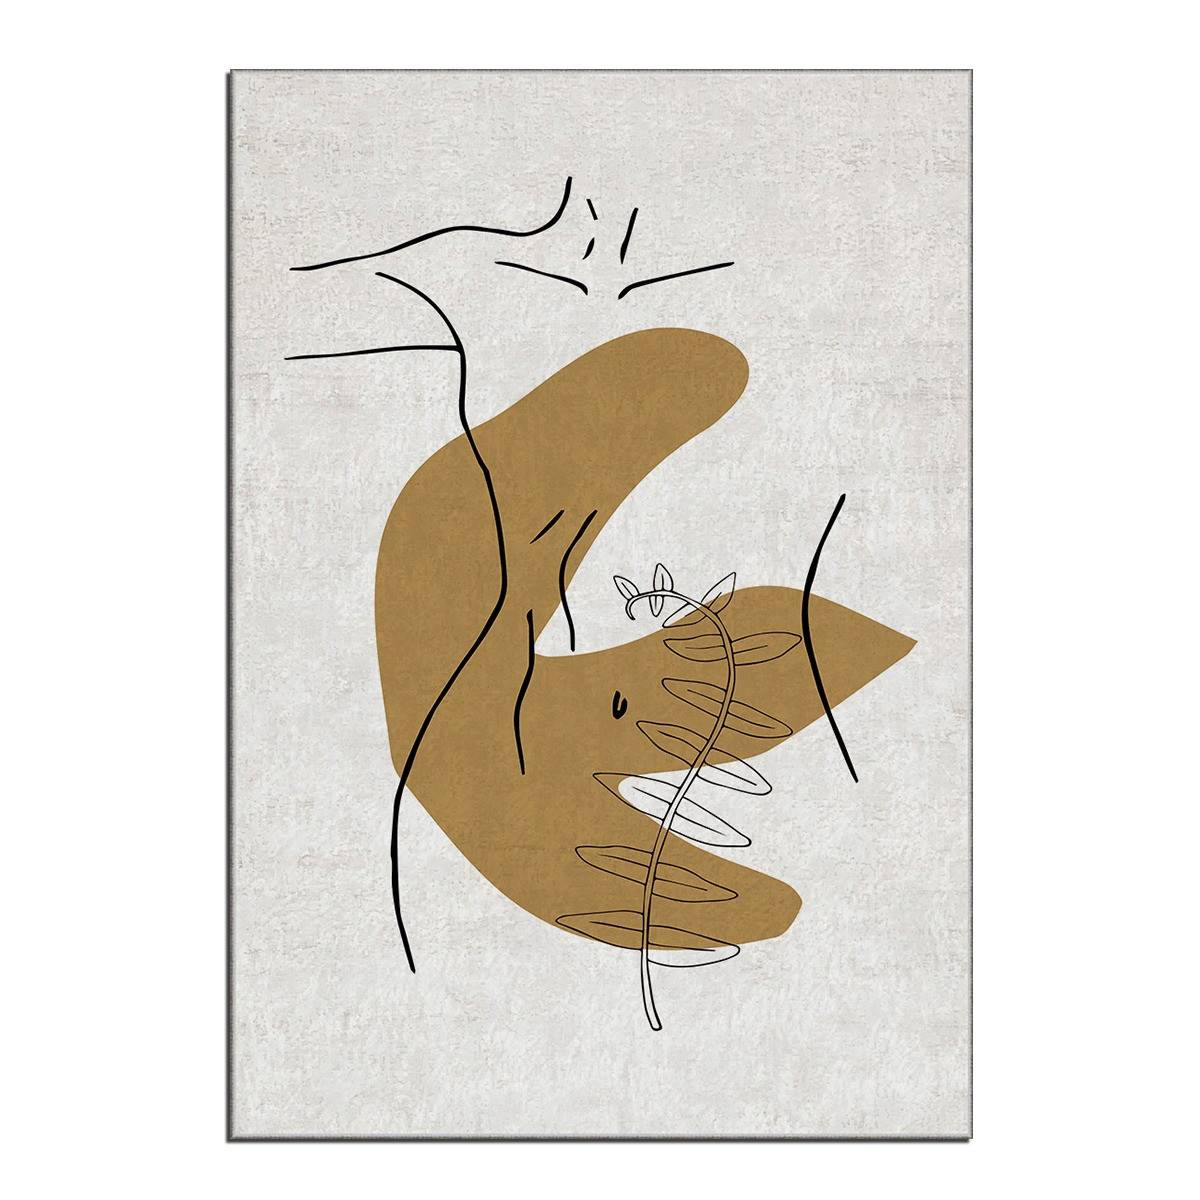 Tapis Eben 100x140cm Motif Abstrait silhouette d'une femme et tache Moutarde